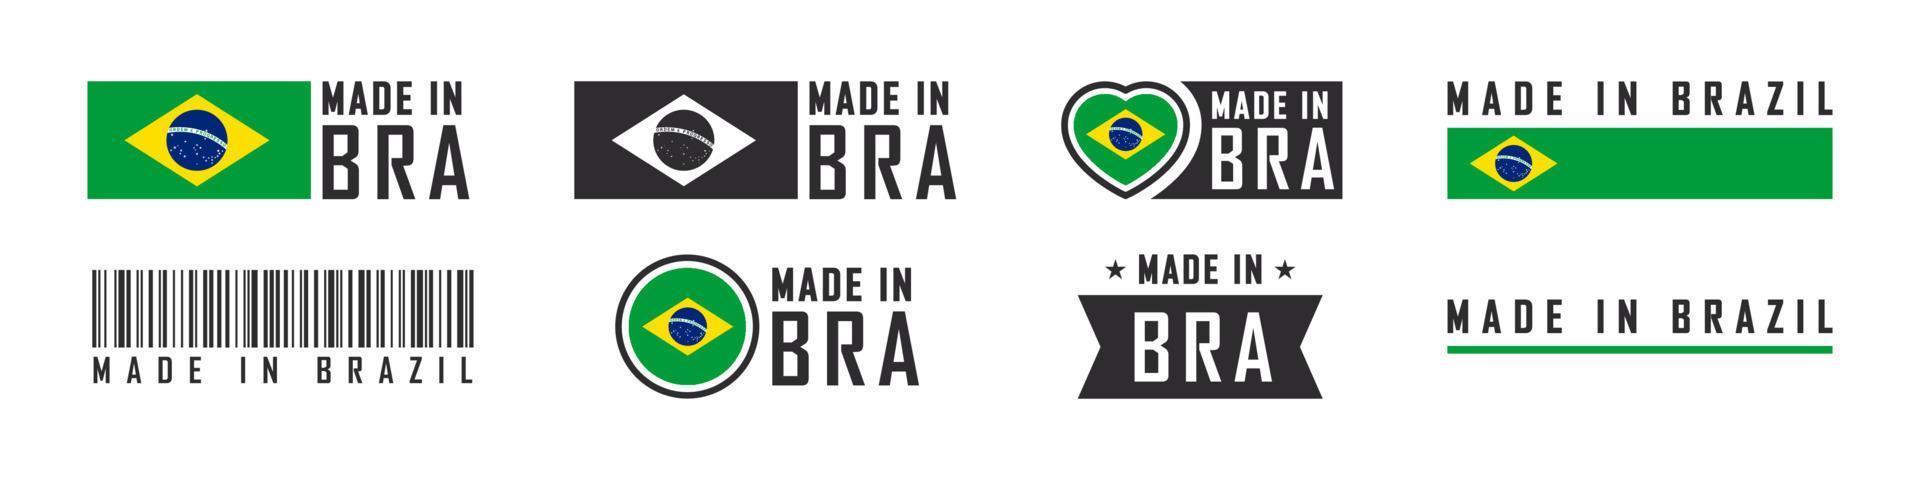 logo ou étiquettes fabriqués au brésil. emblèmes de produits du brésil. illustration vectorielle vecteur